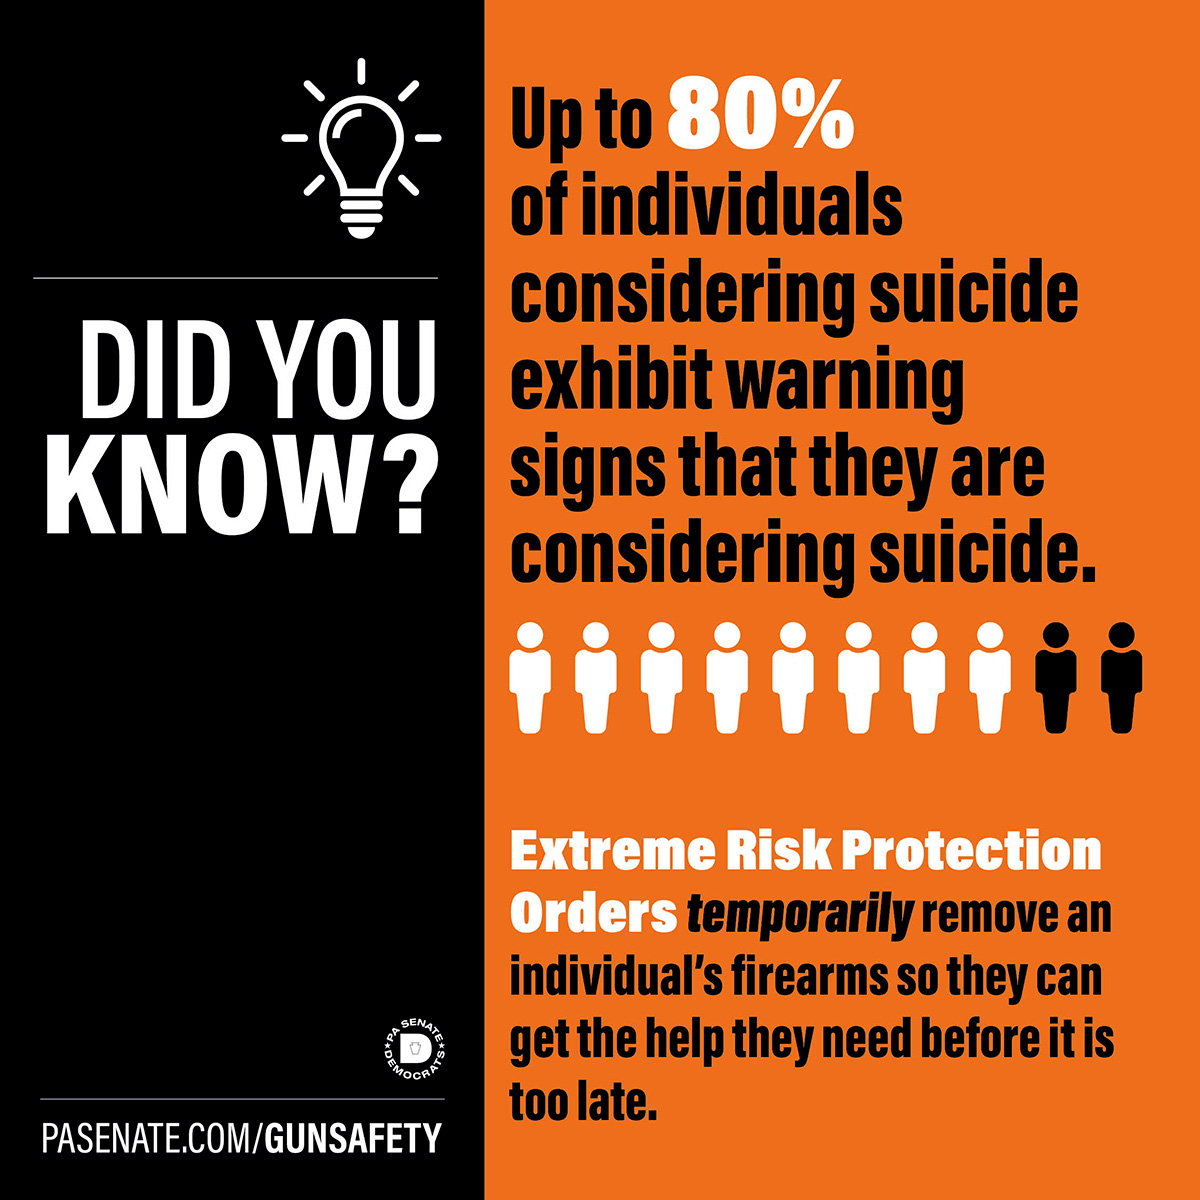 알고 계셨나요? 자살을 고려하는 사람의 최대 80%가 자살을 고려하고 있다는 경고 신호를 보냅니다.